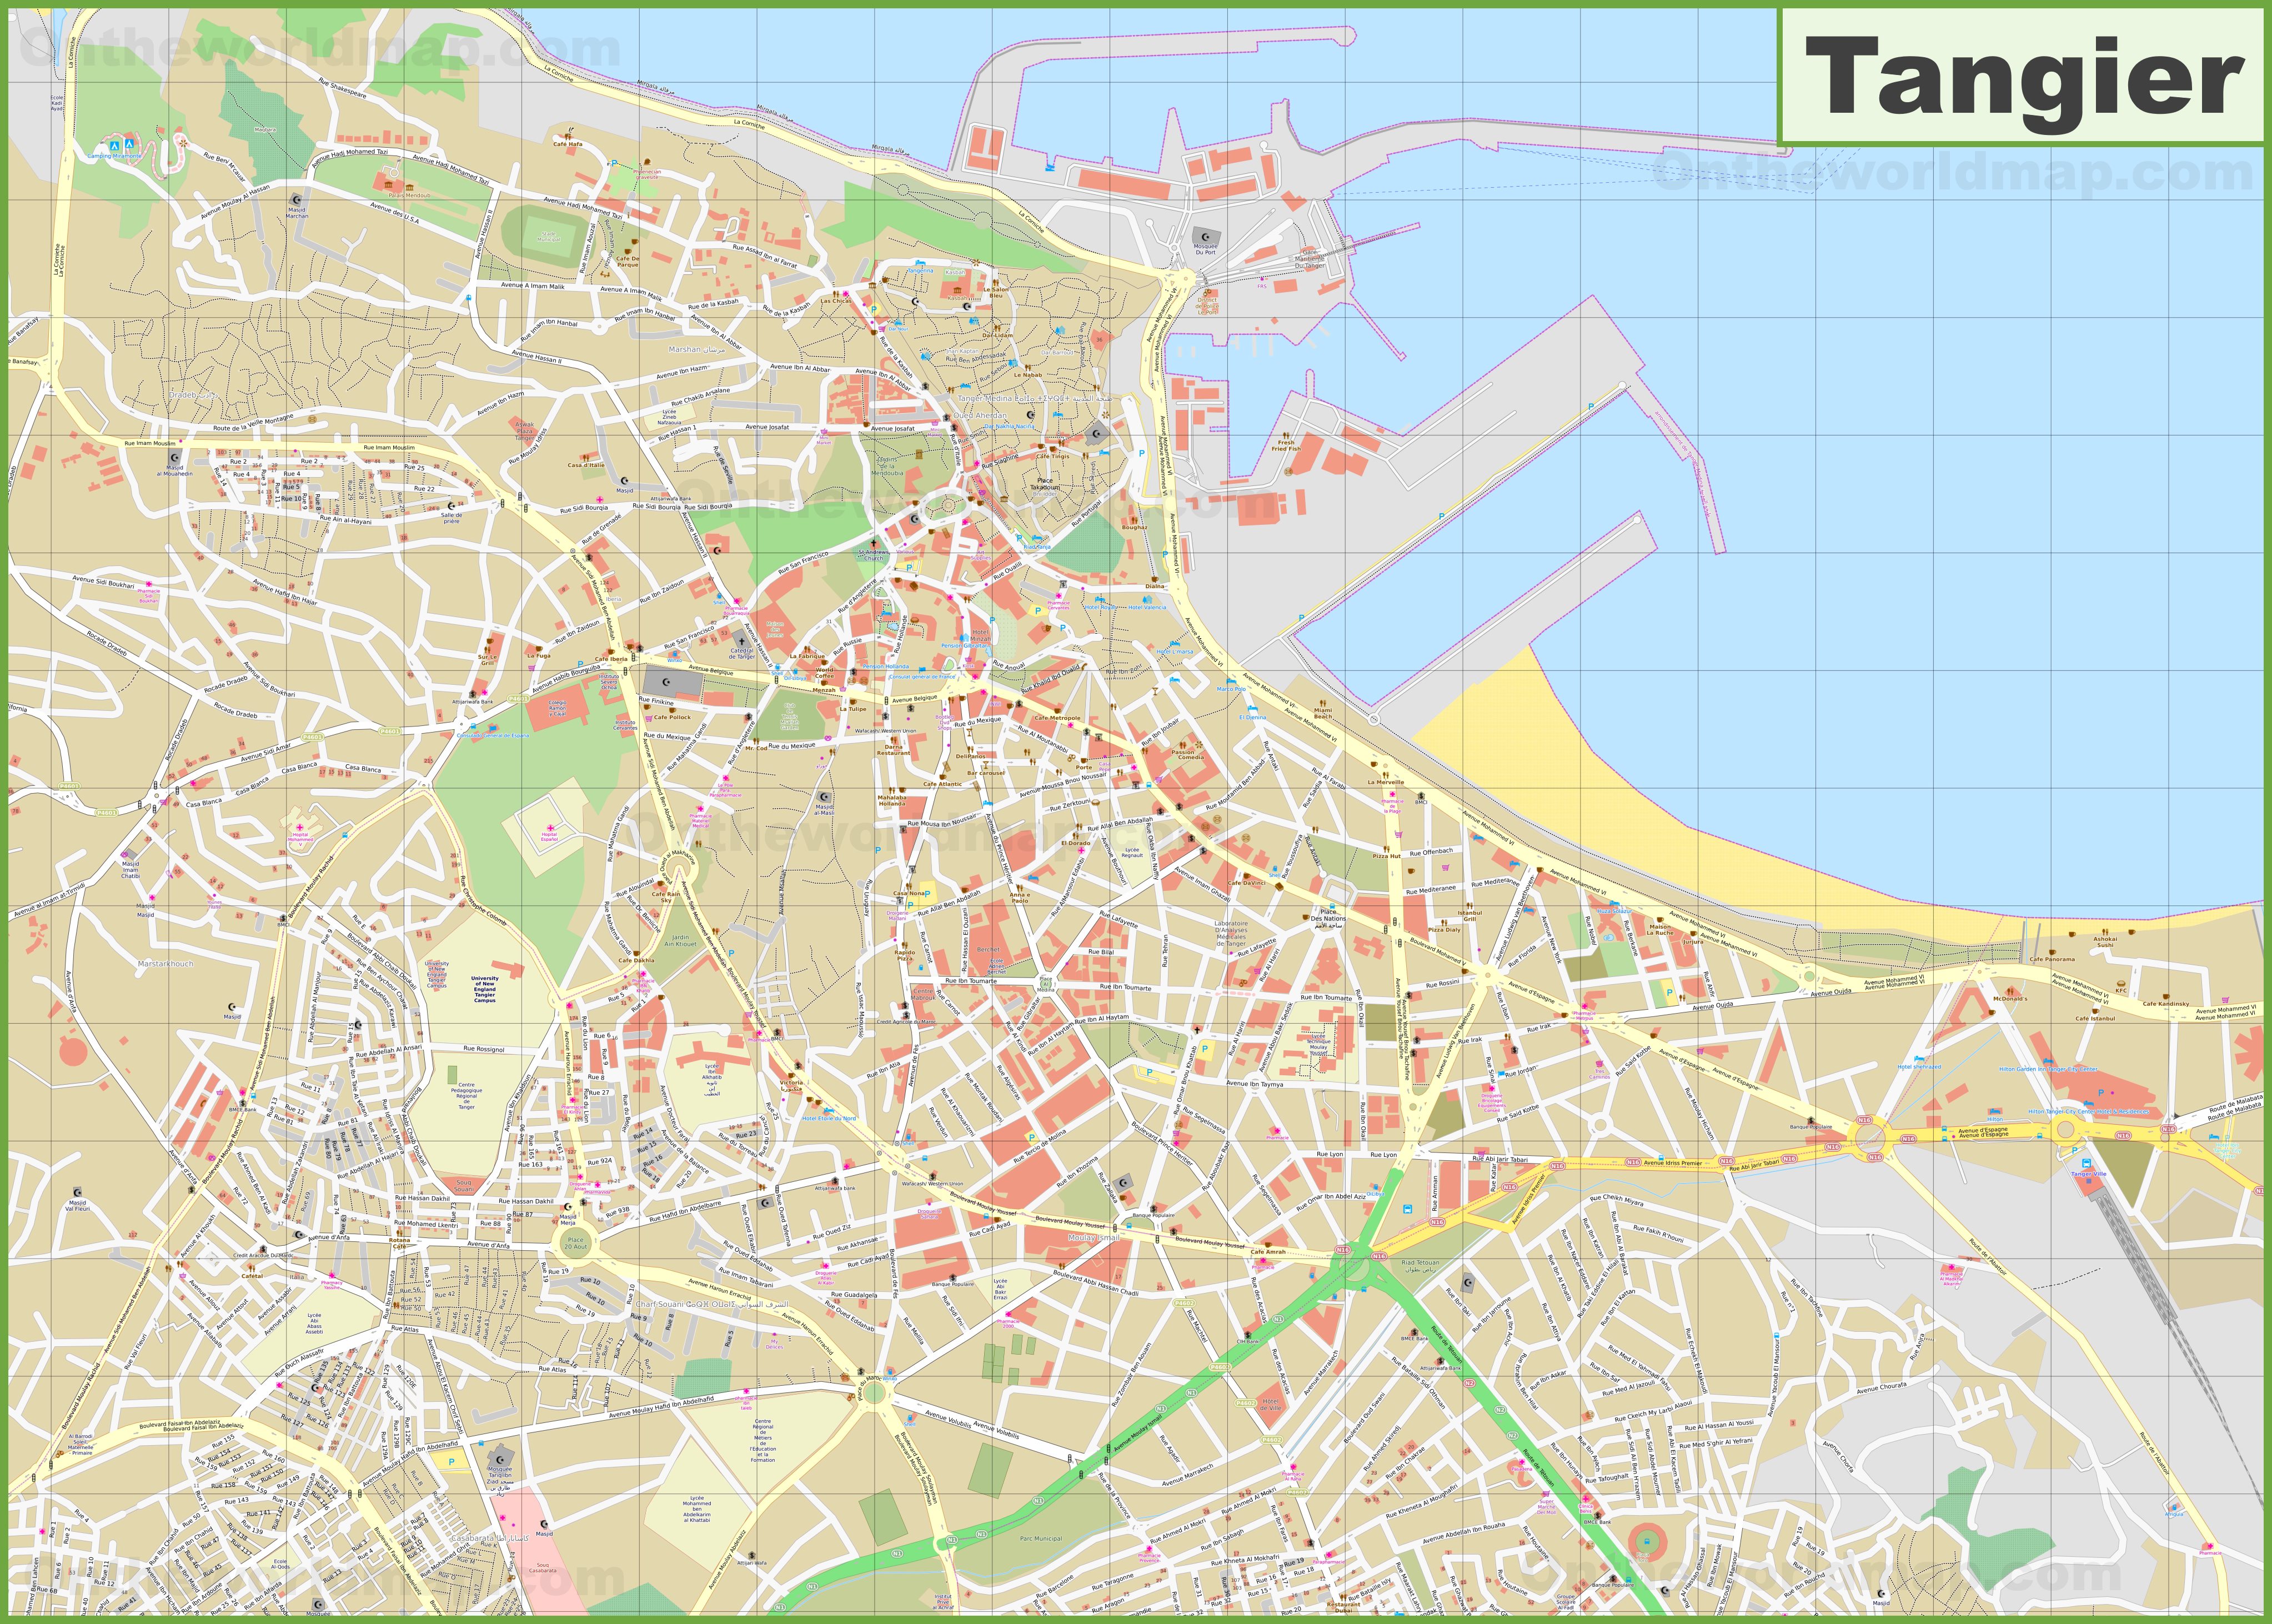 detailed-map-of-tangier.jpg